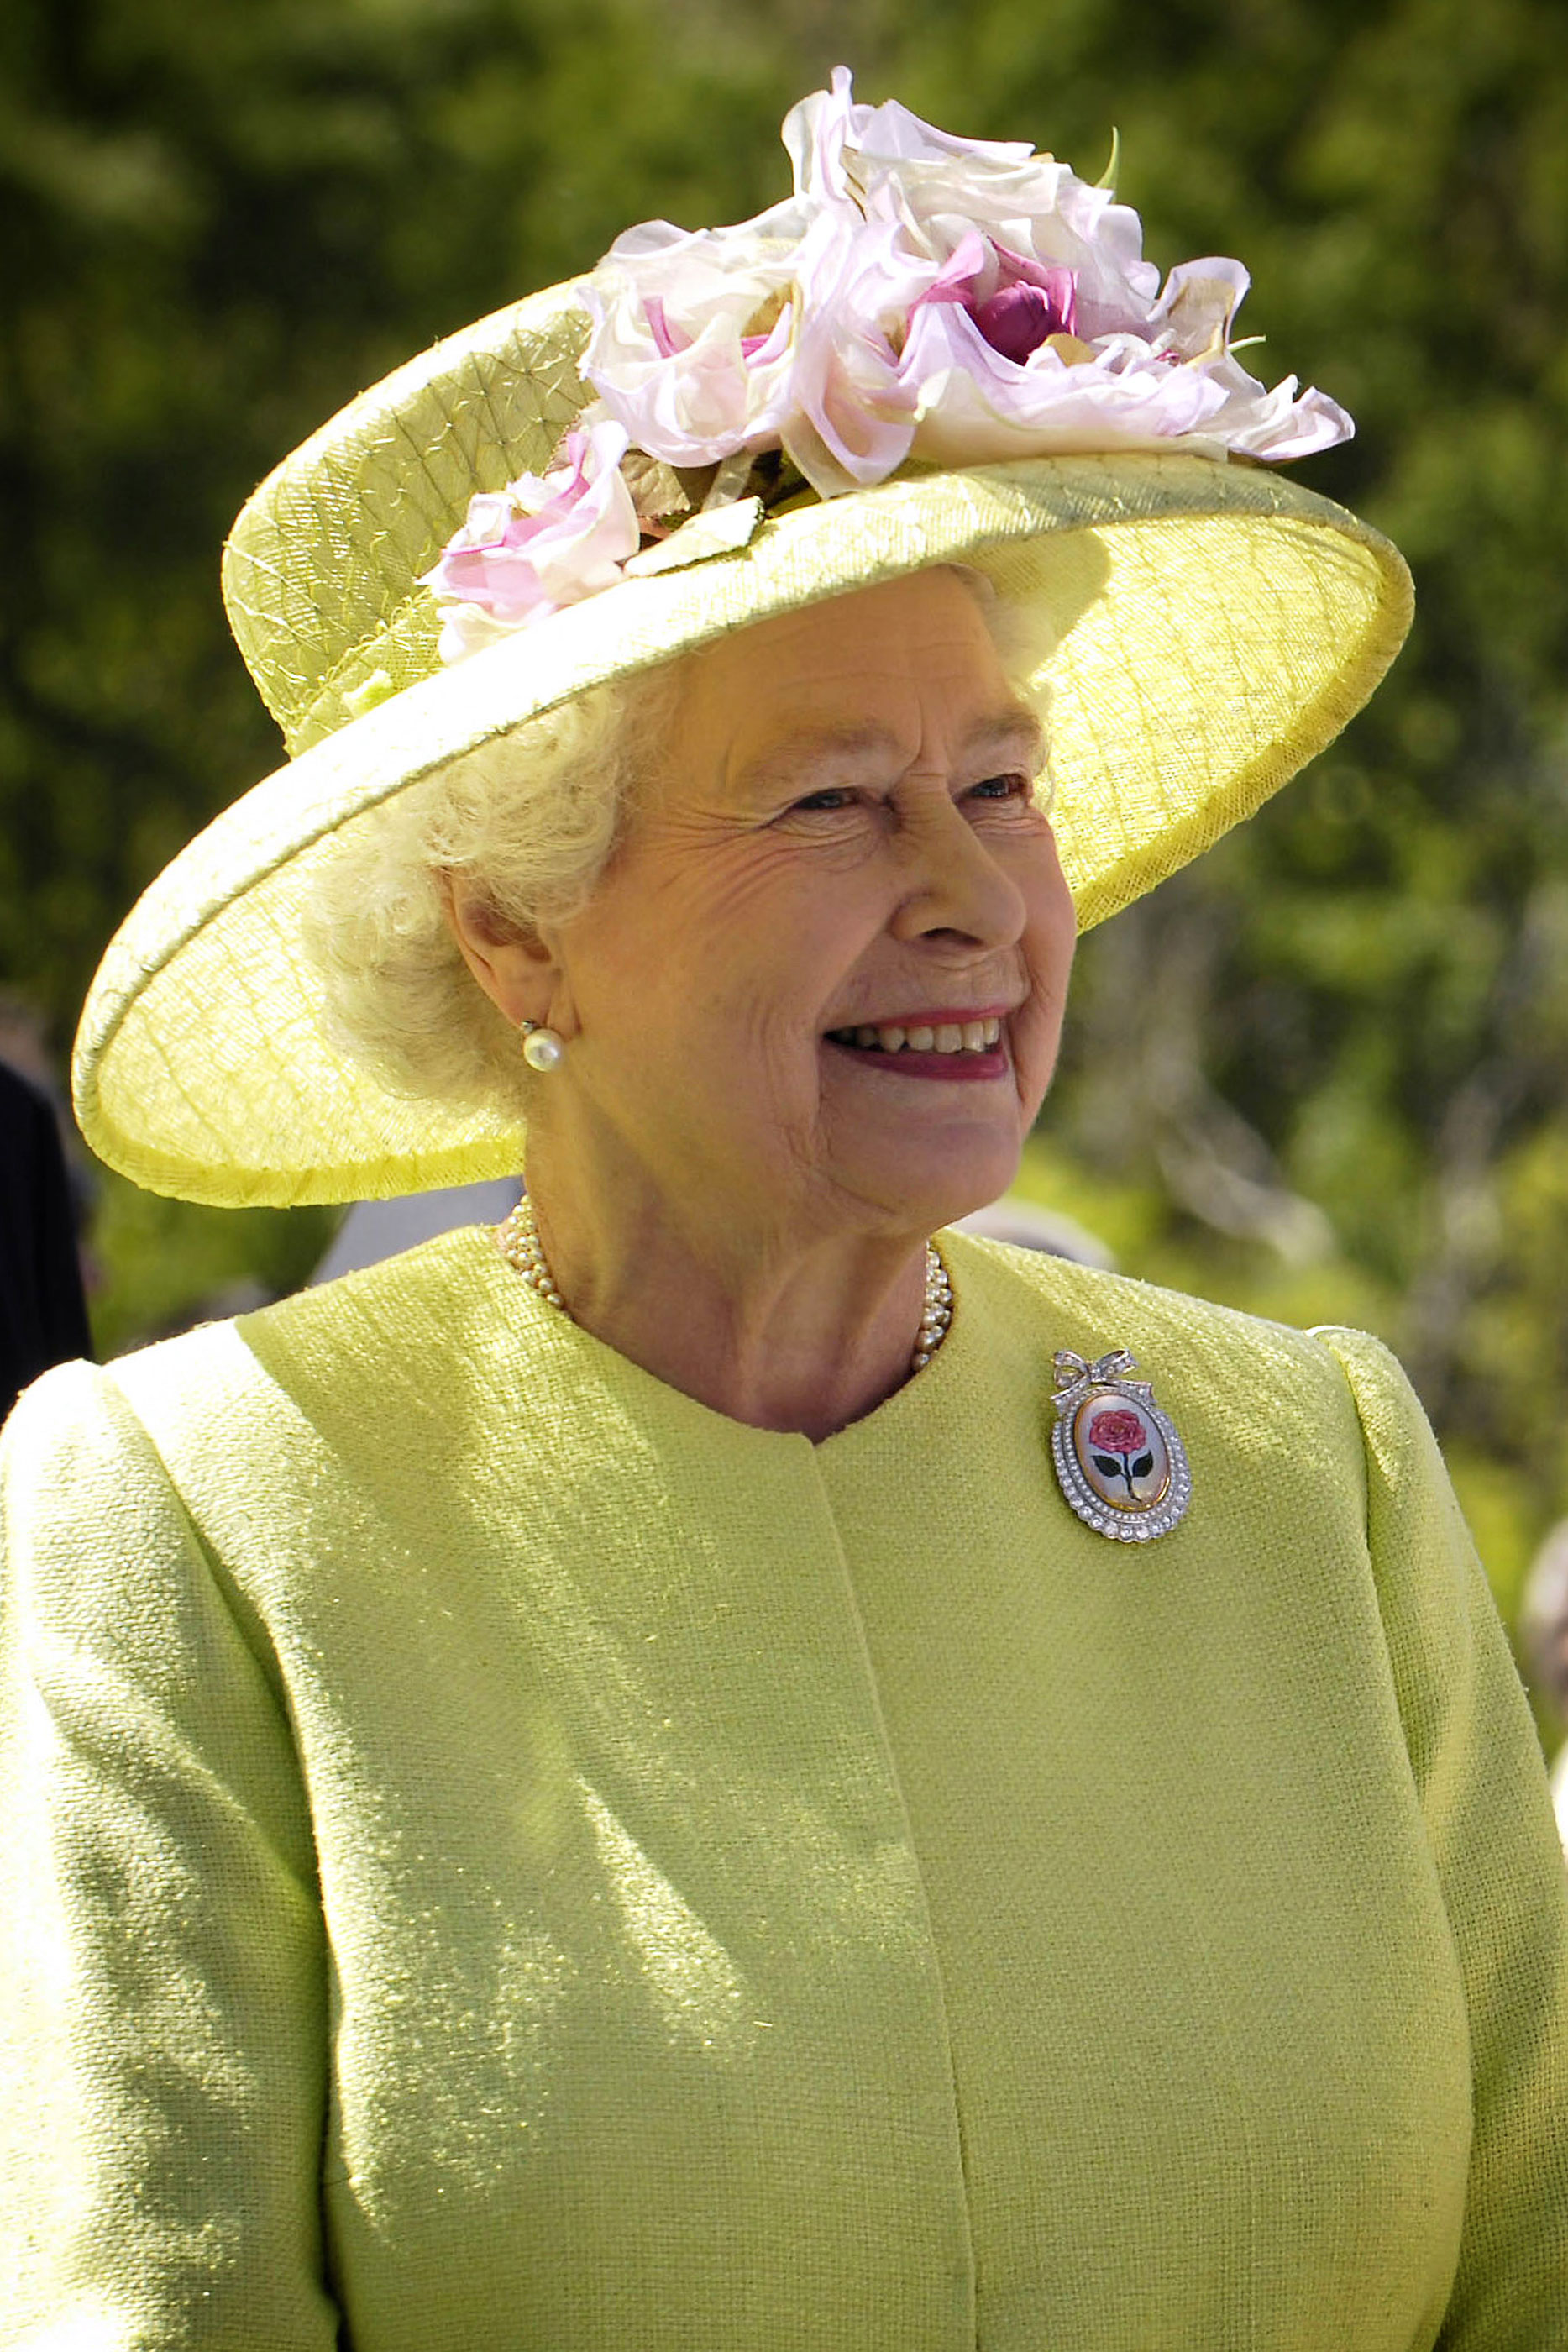 Rainha Isabel II com um vestido verde e um chapéu da mesma cor, com um pormenor dumas rosas na pala.